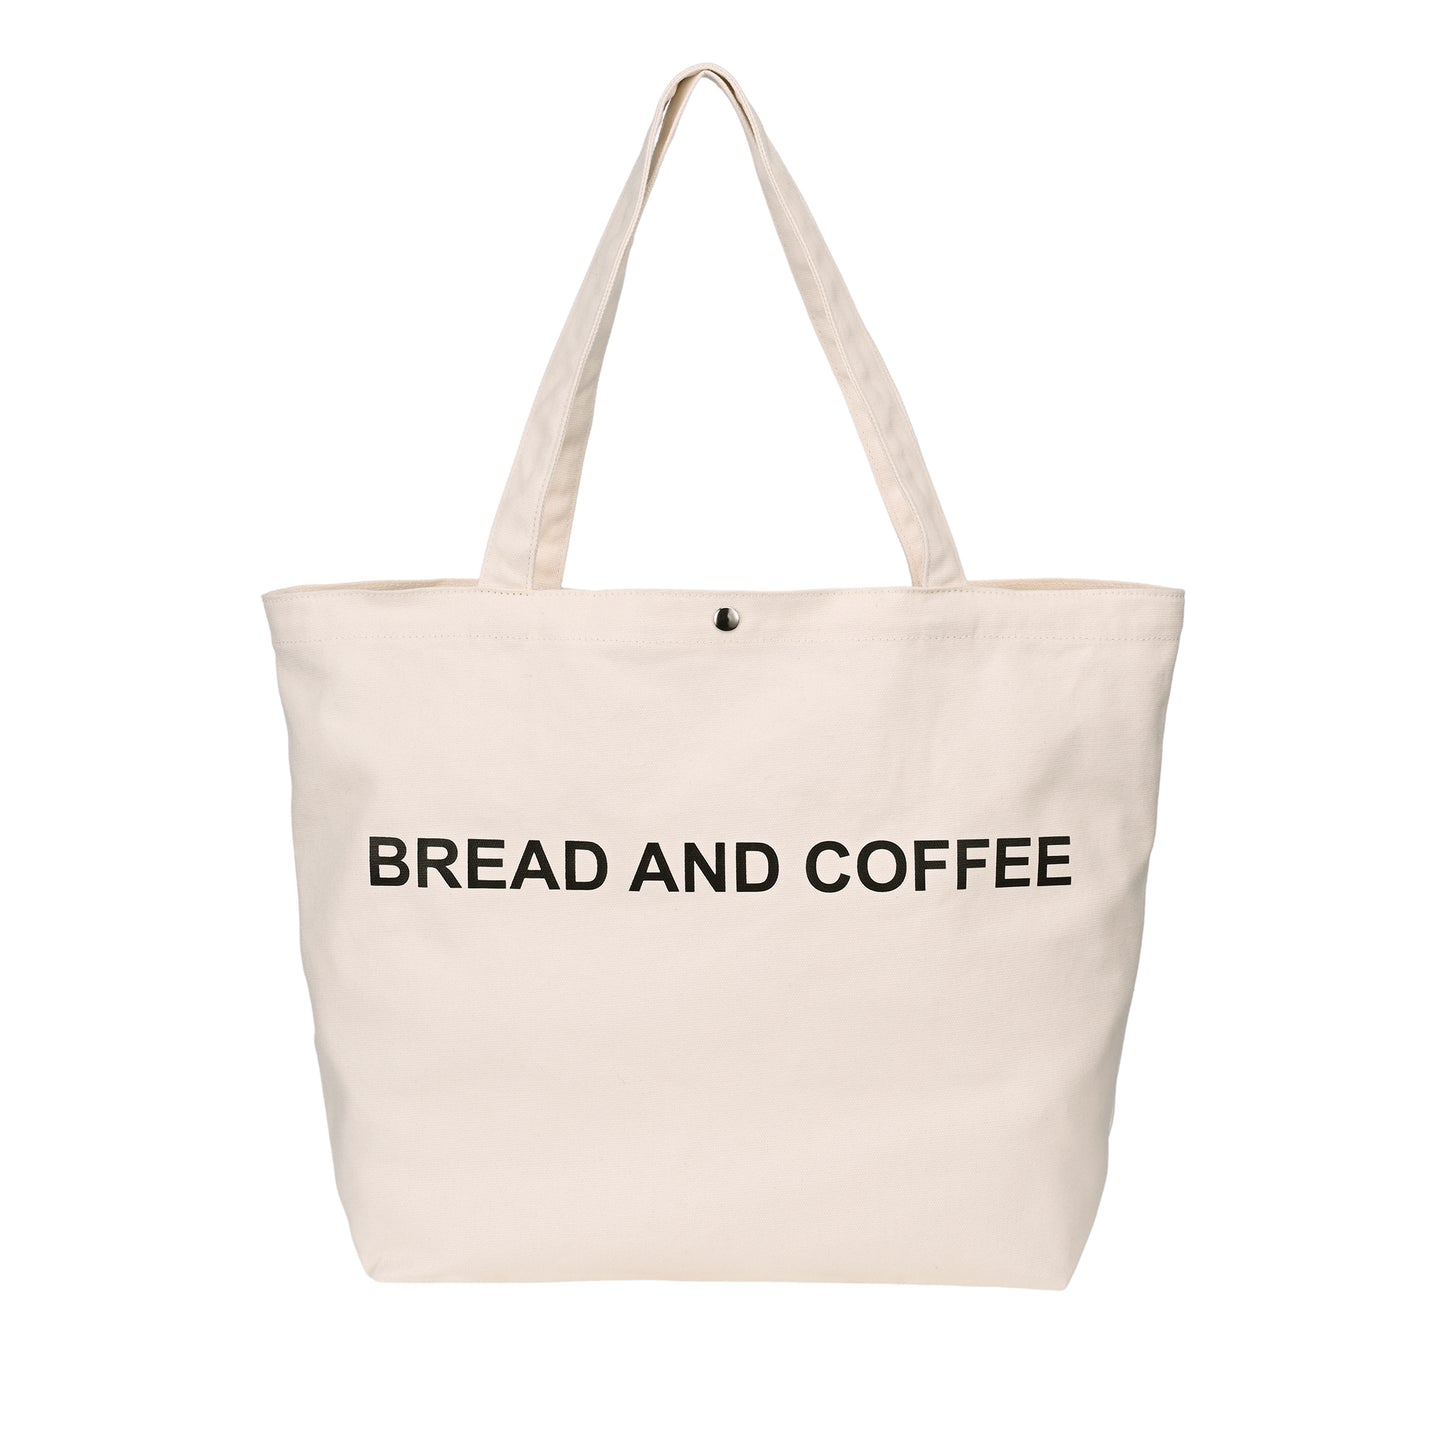 JIYUERLTD Trendy Tote Bag-16oz Canvas Shopper für modische Käufer und Outdoor-Enthusiasten